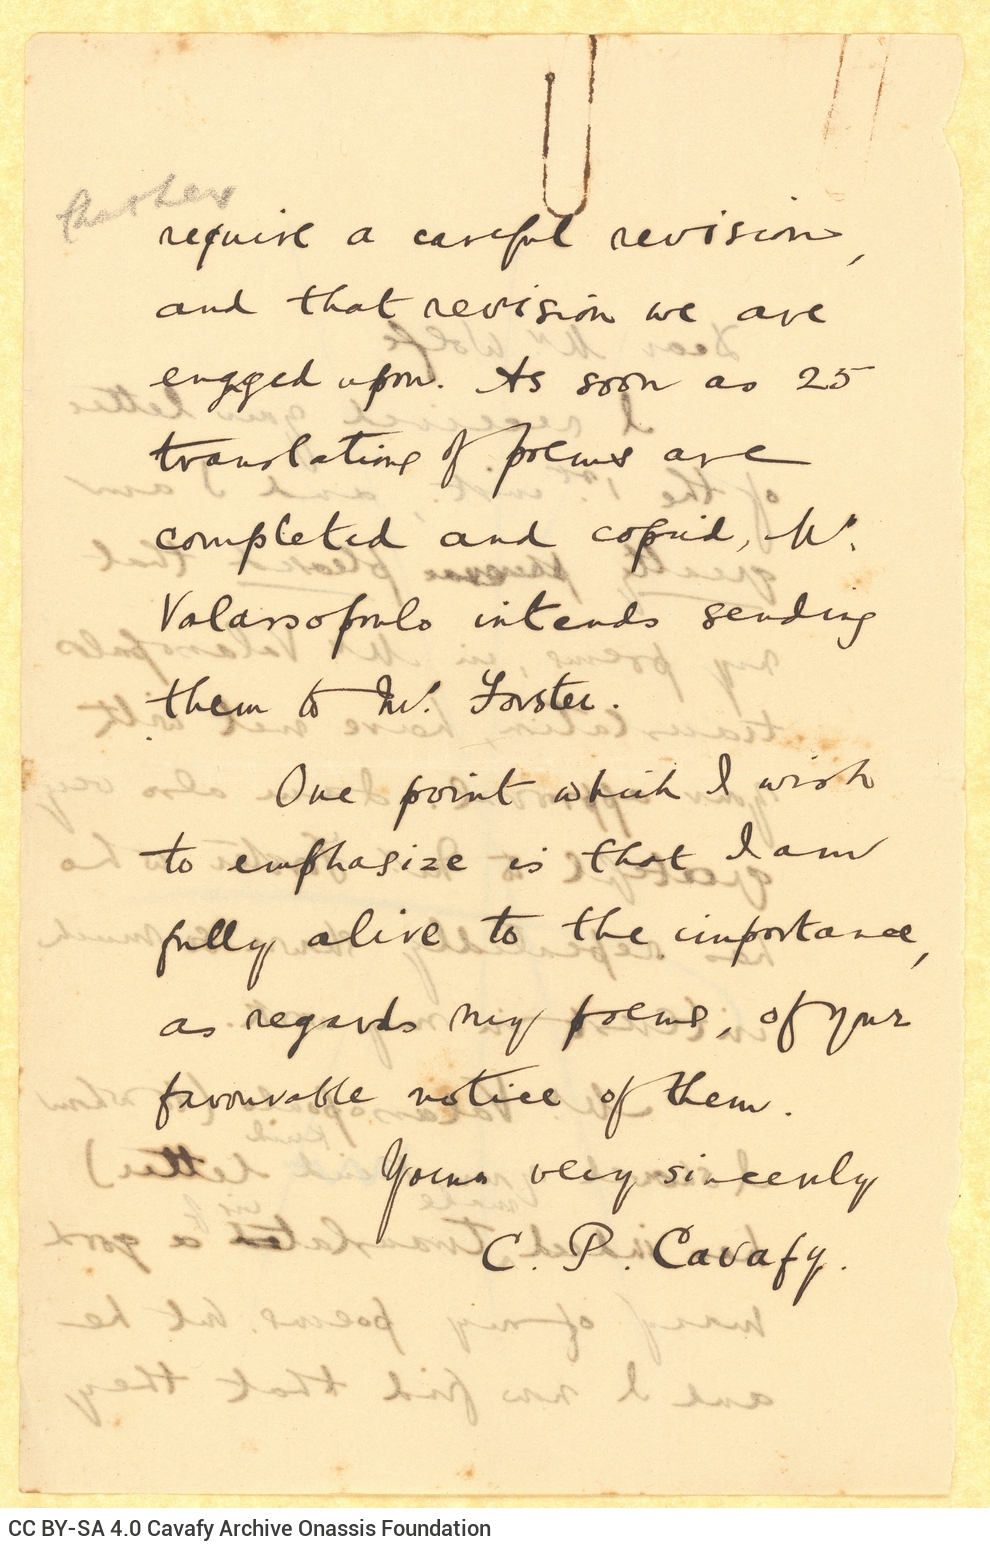 Σχέδιο επιστολής του Καβάφη προς τον Λέναρντ Γουλφ (Leonard Woolf) στην πρώ